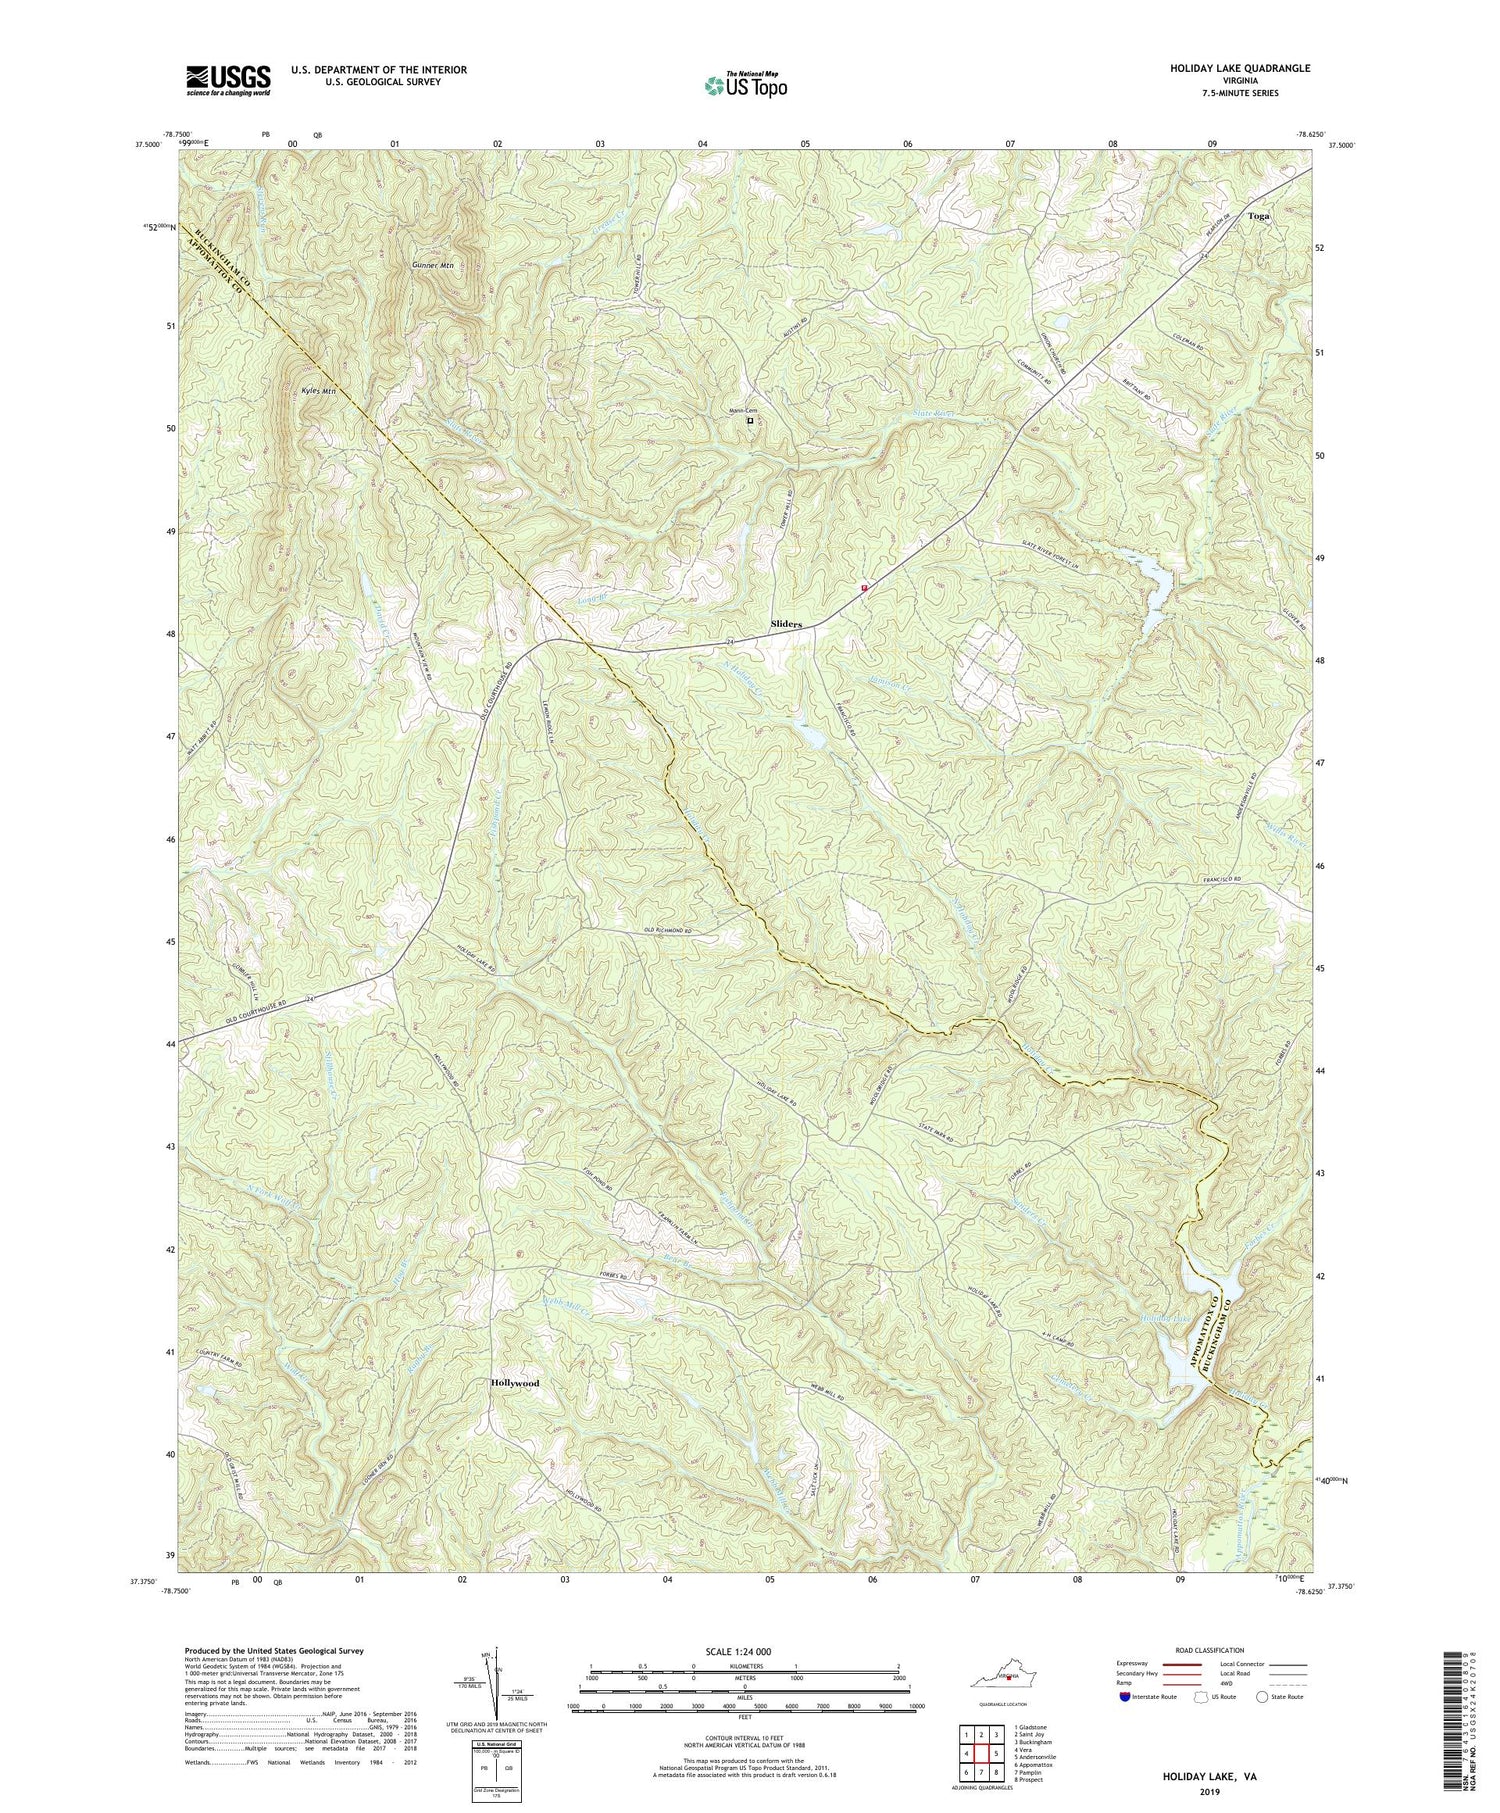 Holiday Lake Virginia US Topo Map Image